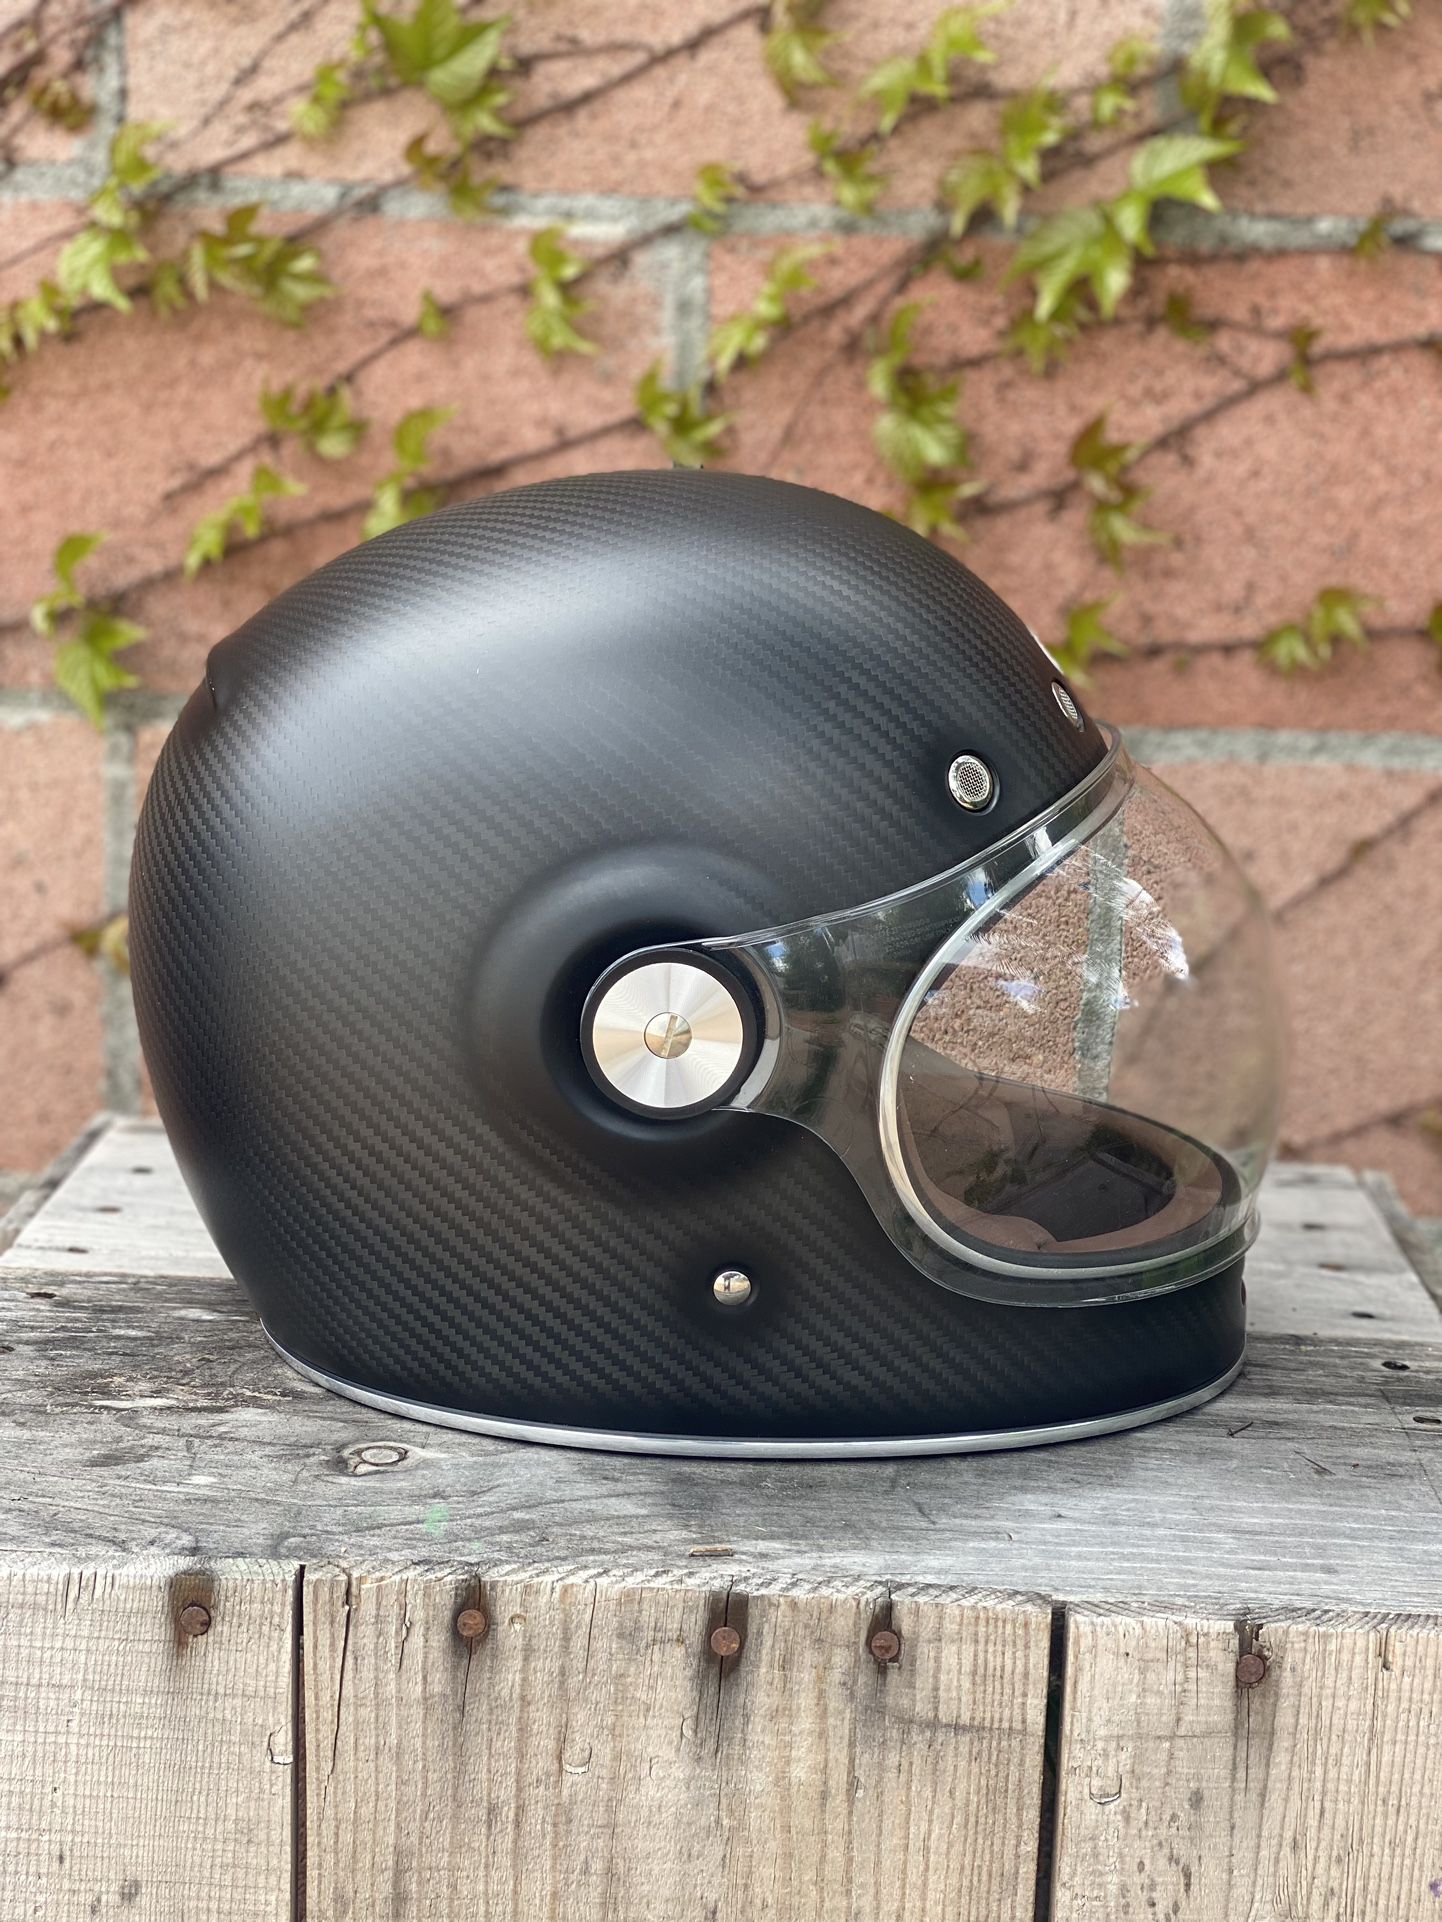 Bell Bullitt Carbon Motorcycle Helmet